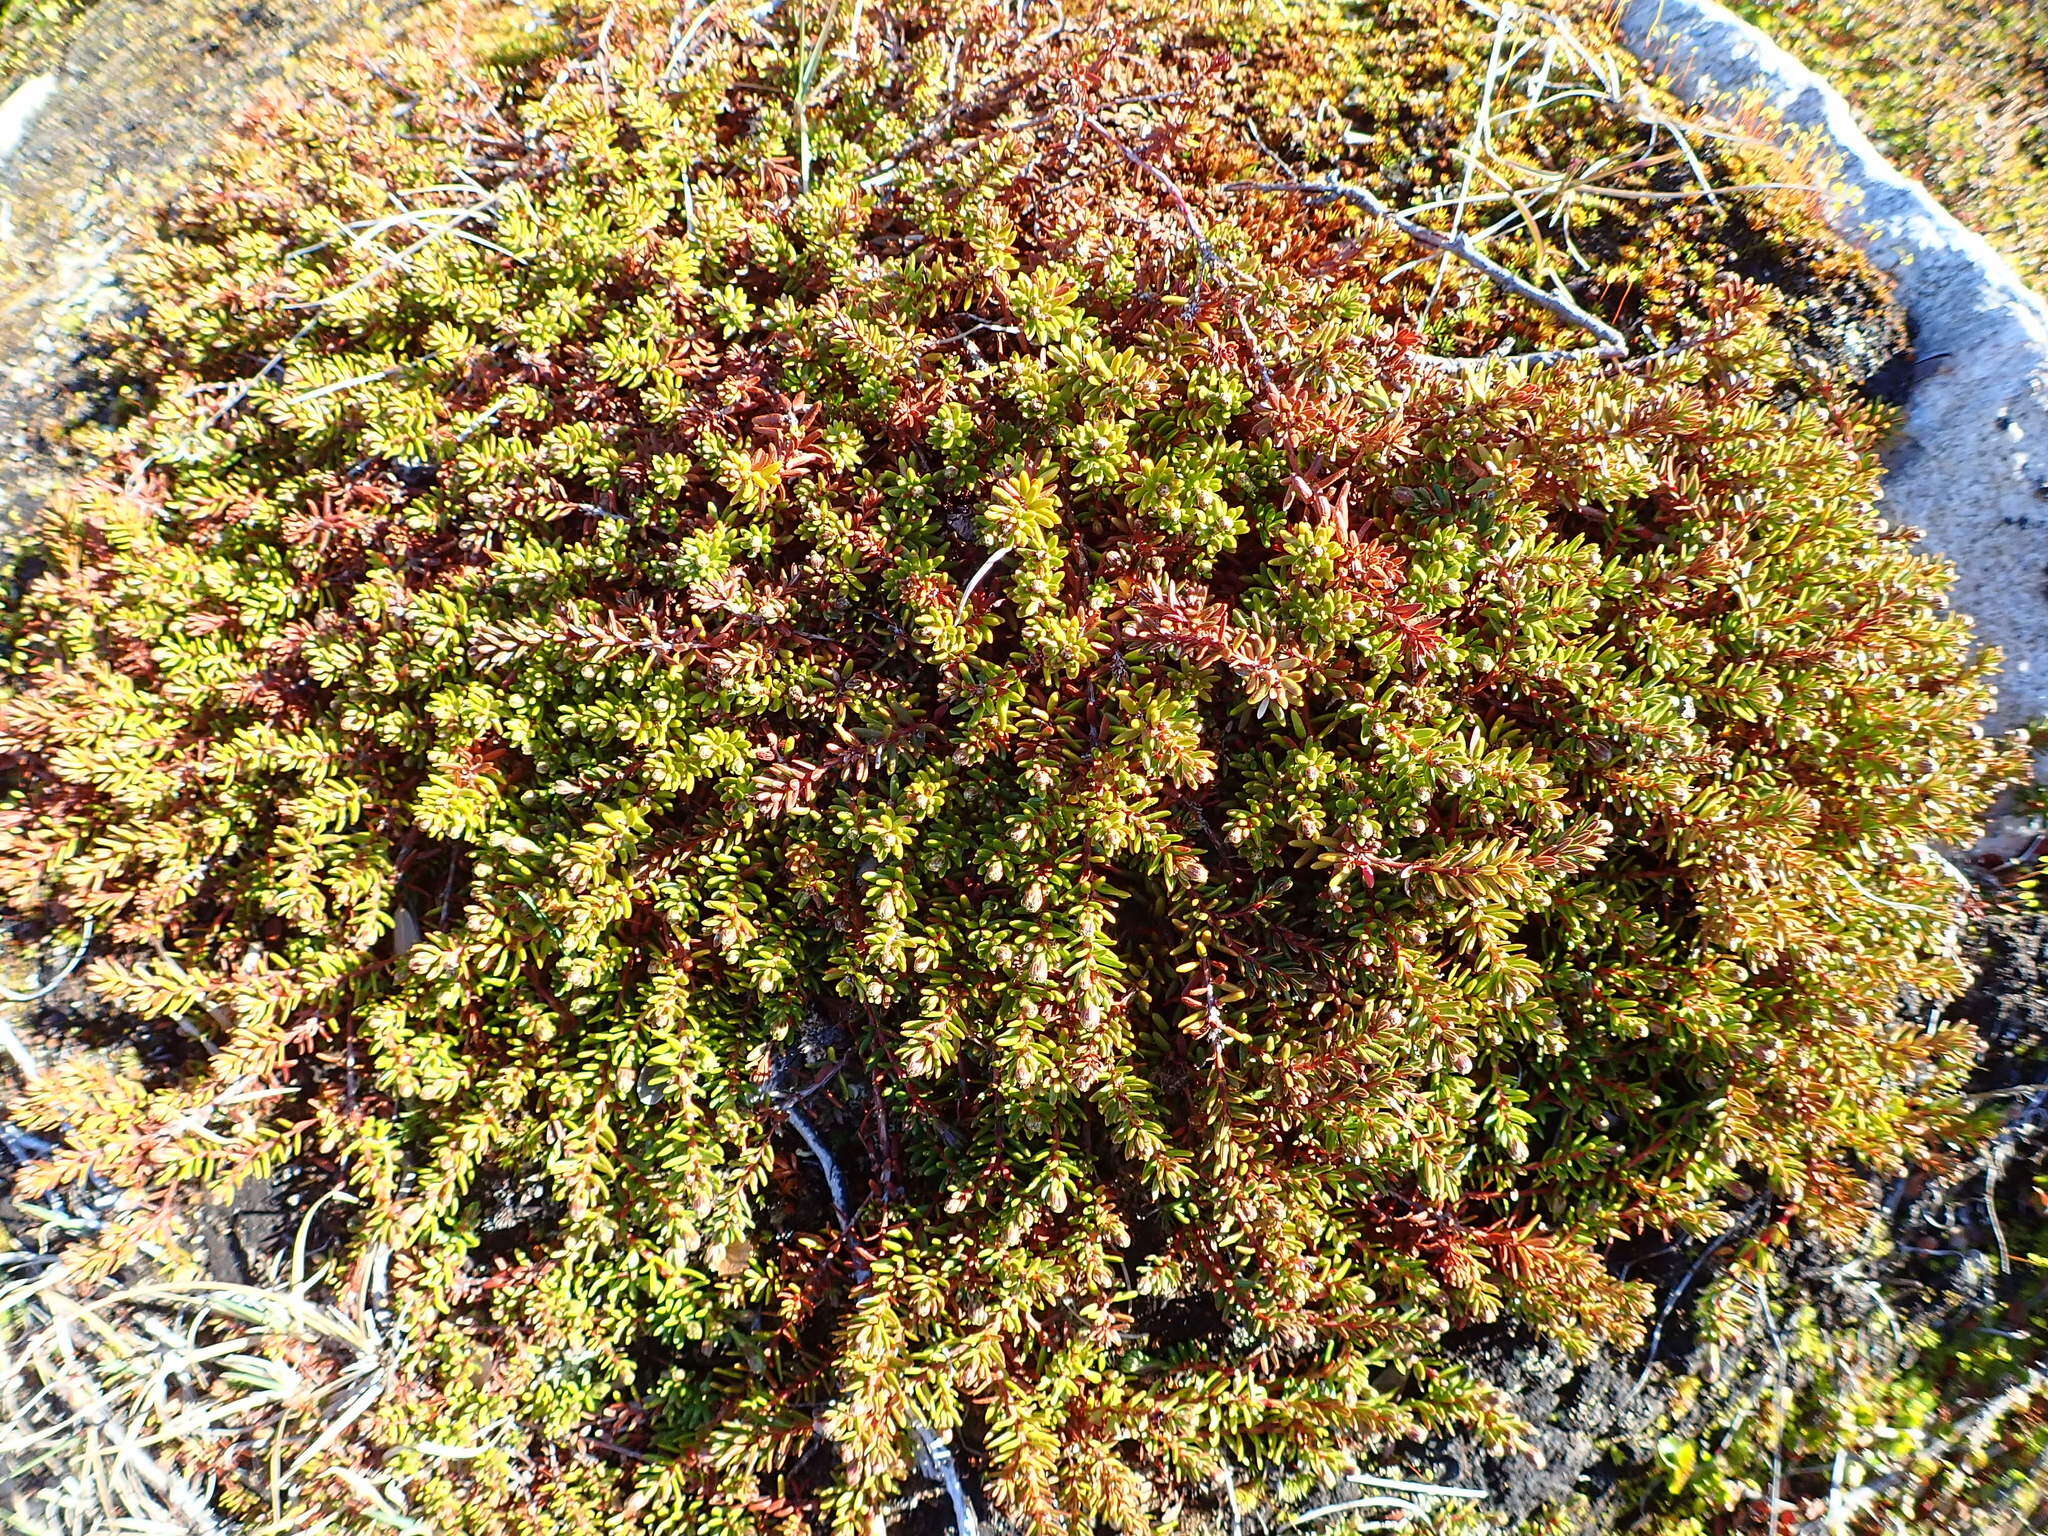 صورة Empetrum nigrum subsp. hermaphroditum (Hagerup) Böcher